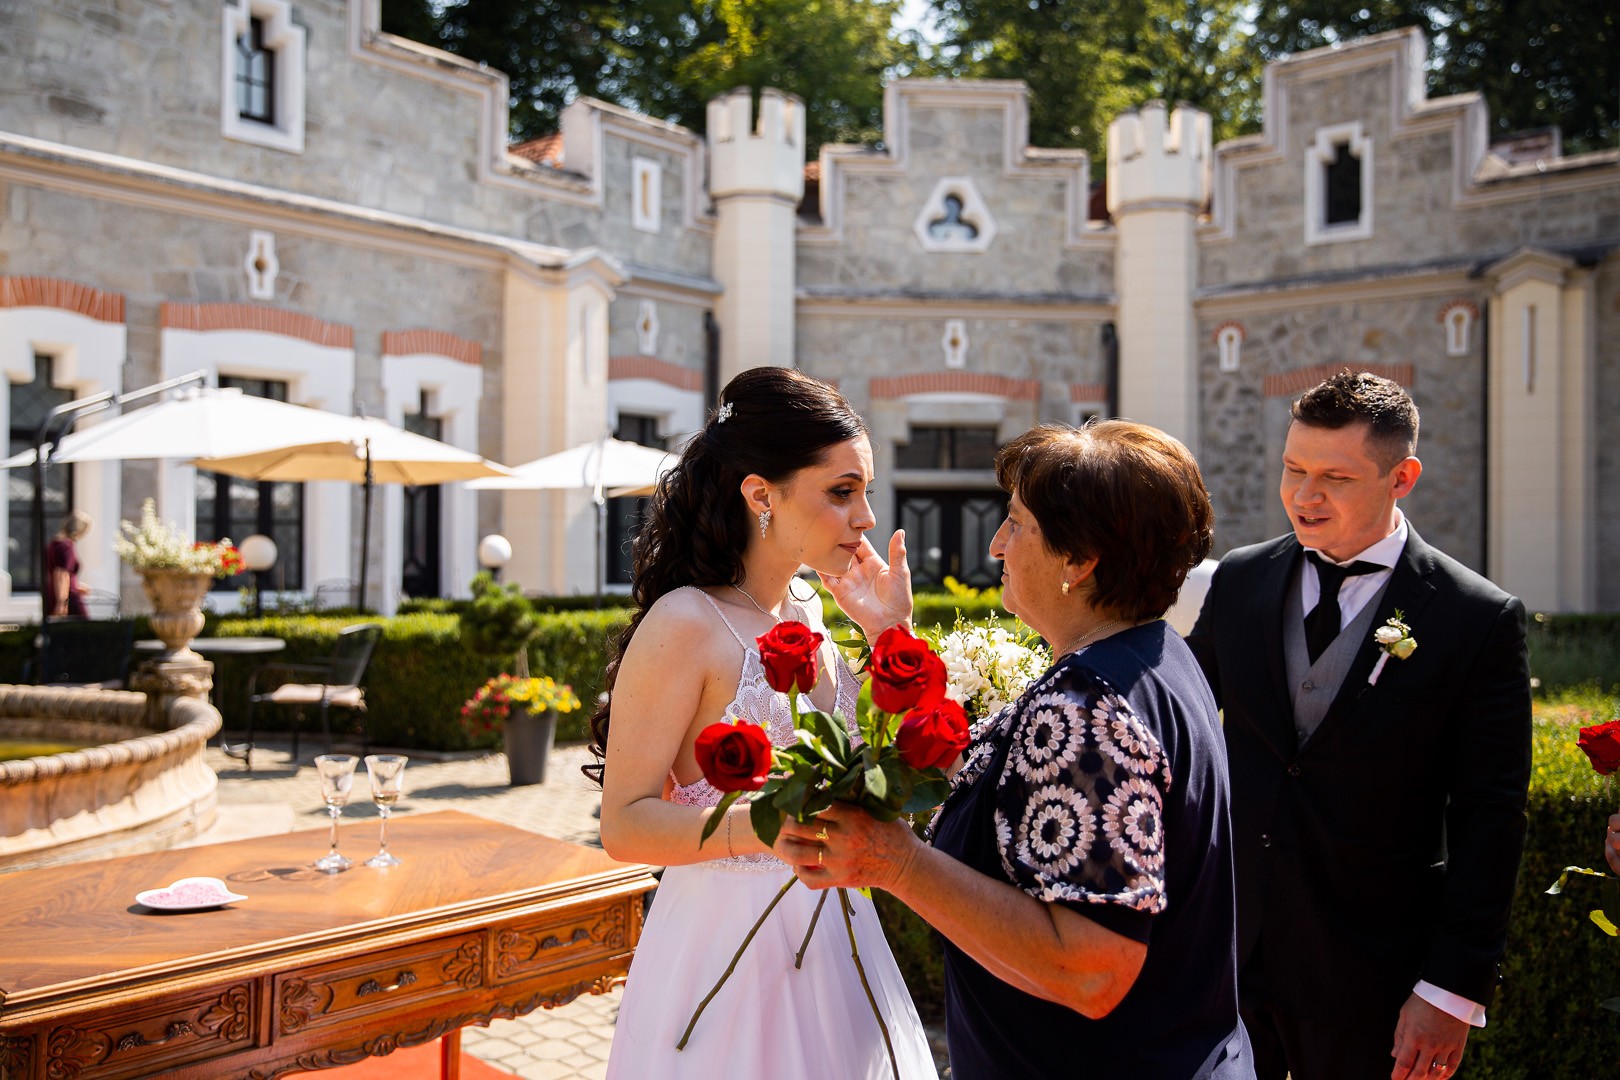 Picturesque dream wedding of Kloudy & Michal in Hluboká nad Vltavou. - 0202.jpg